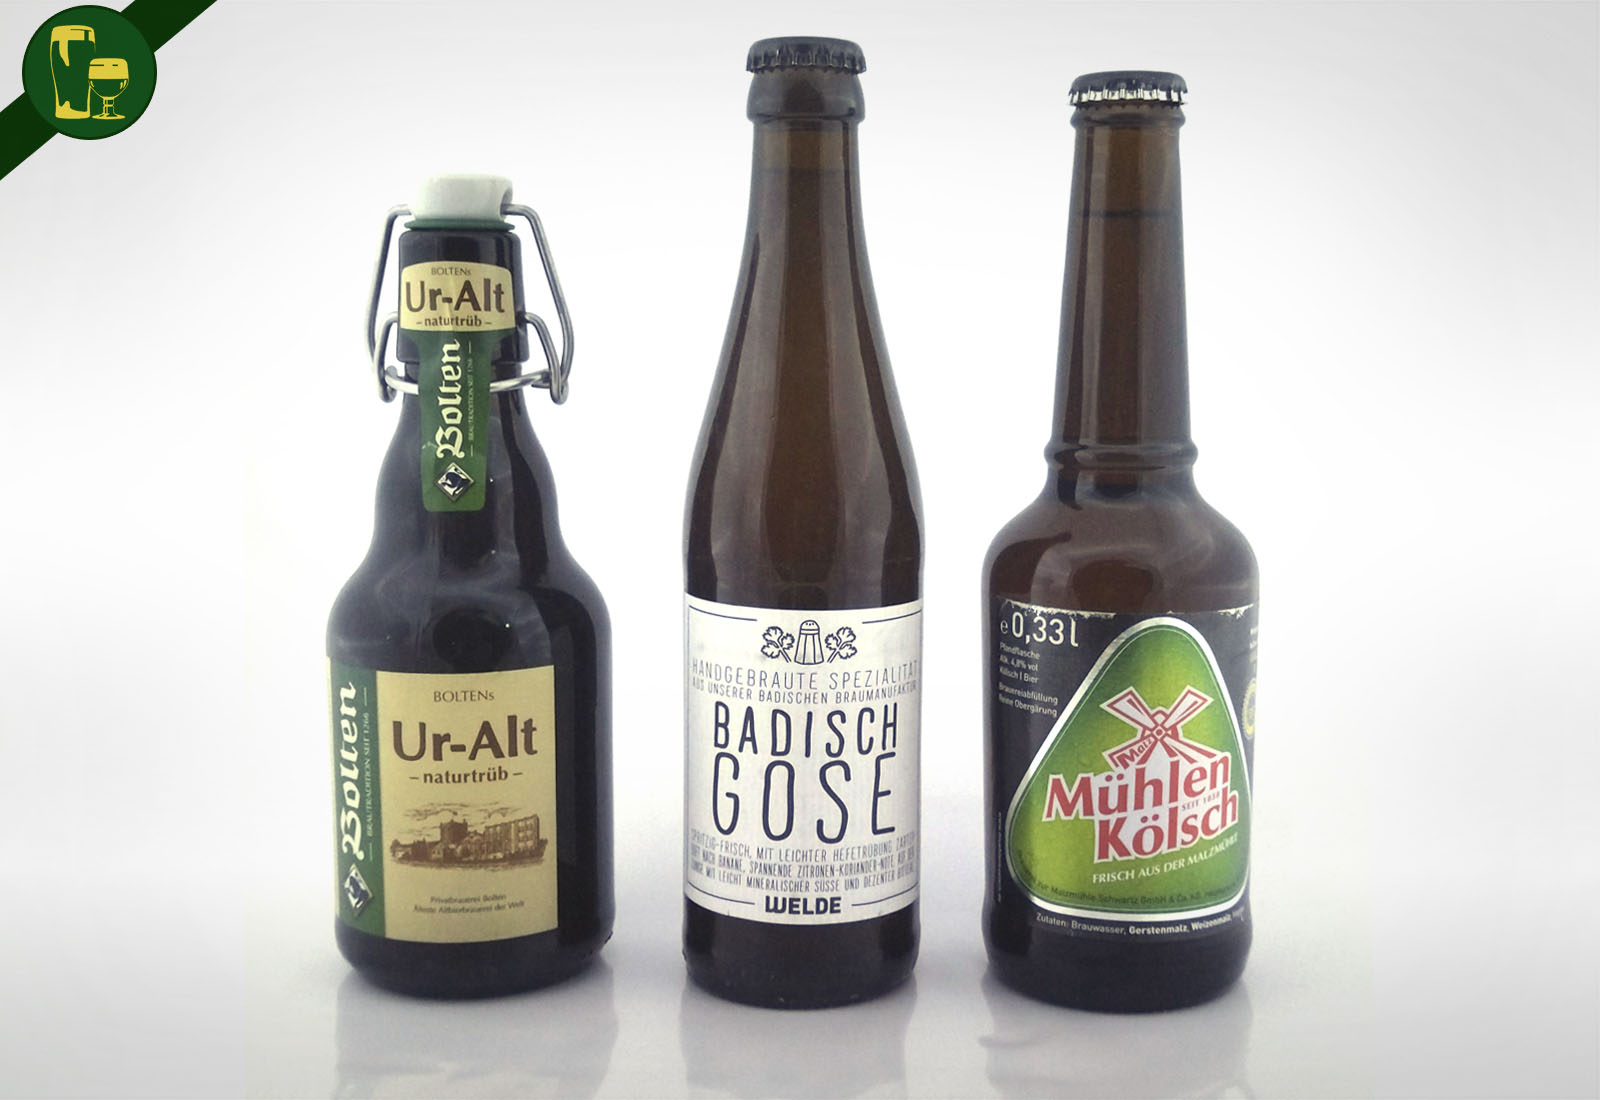 Maltosaa - ¿Qué tanto conoces sobre la historia de la cerveza